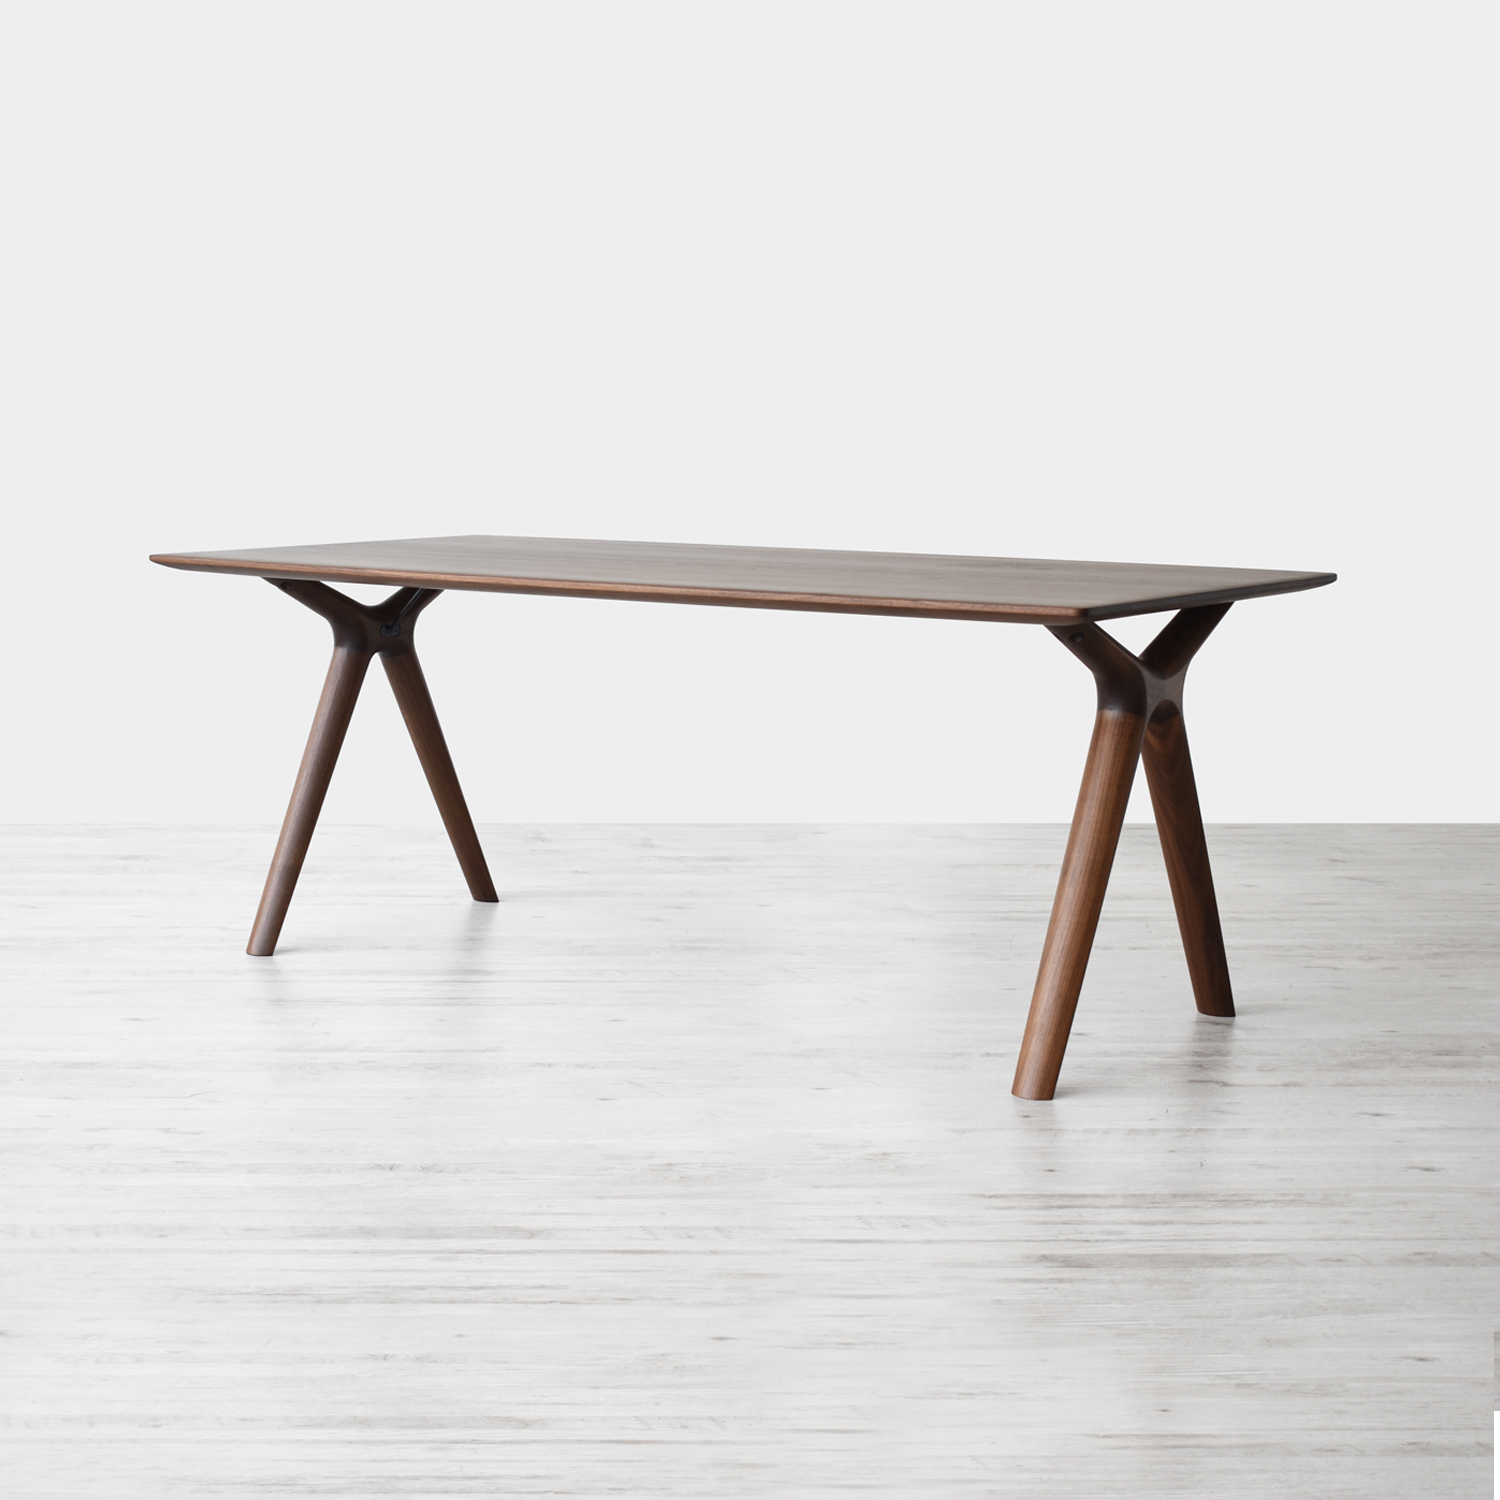 起立木工 テーブル「ラディウス」ウォールナット材 セラウッド塗装 全4